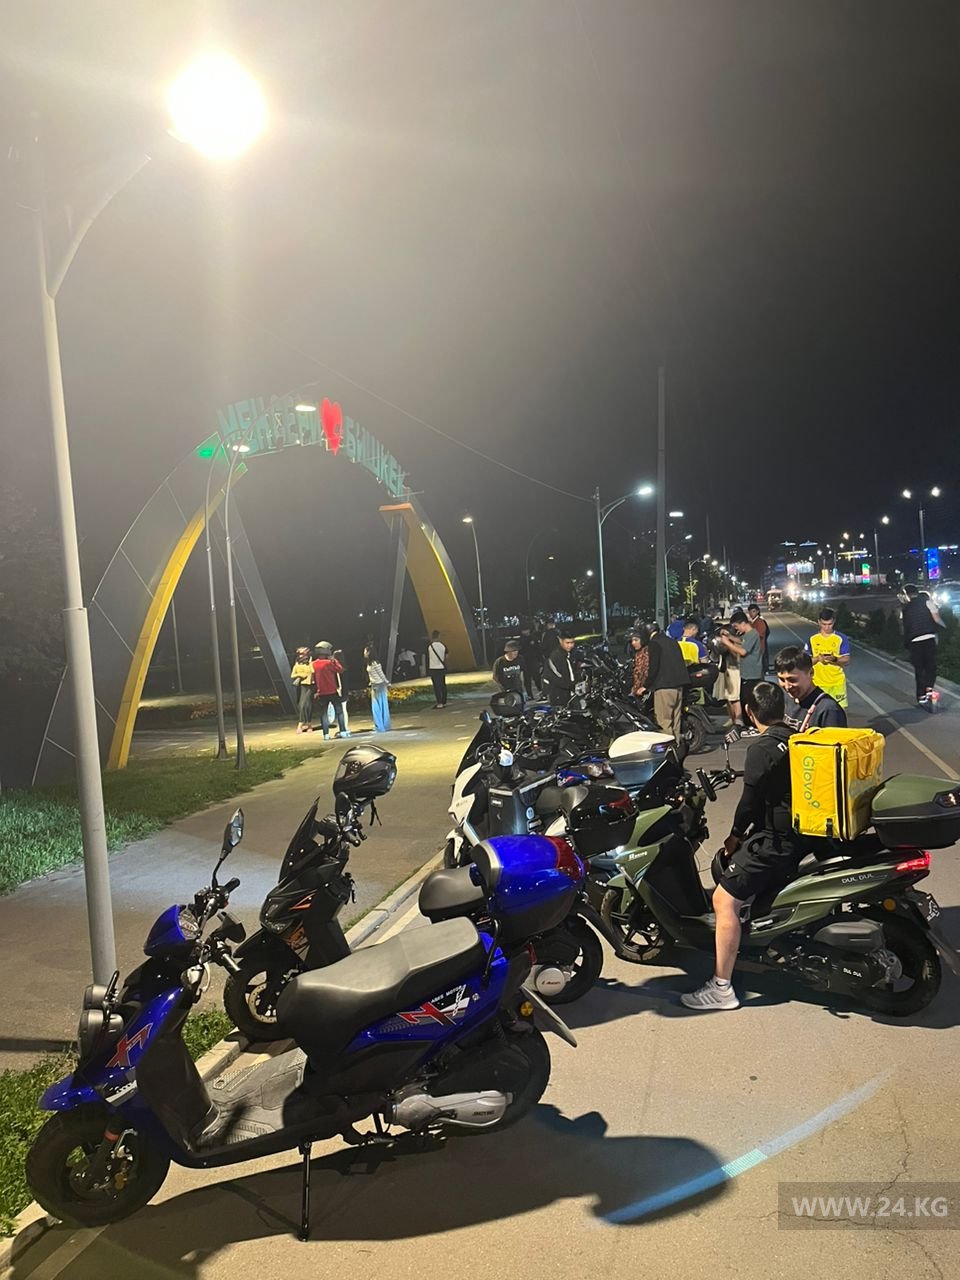 Опасно ходить. Бишкекчане жалуются на скутеры в парке 